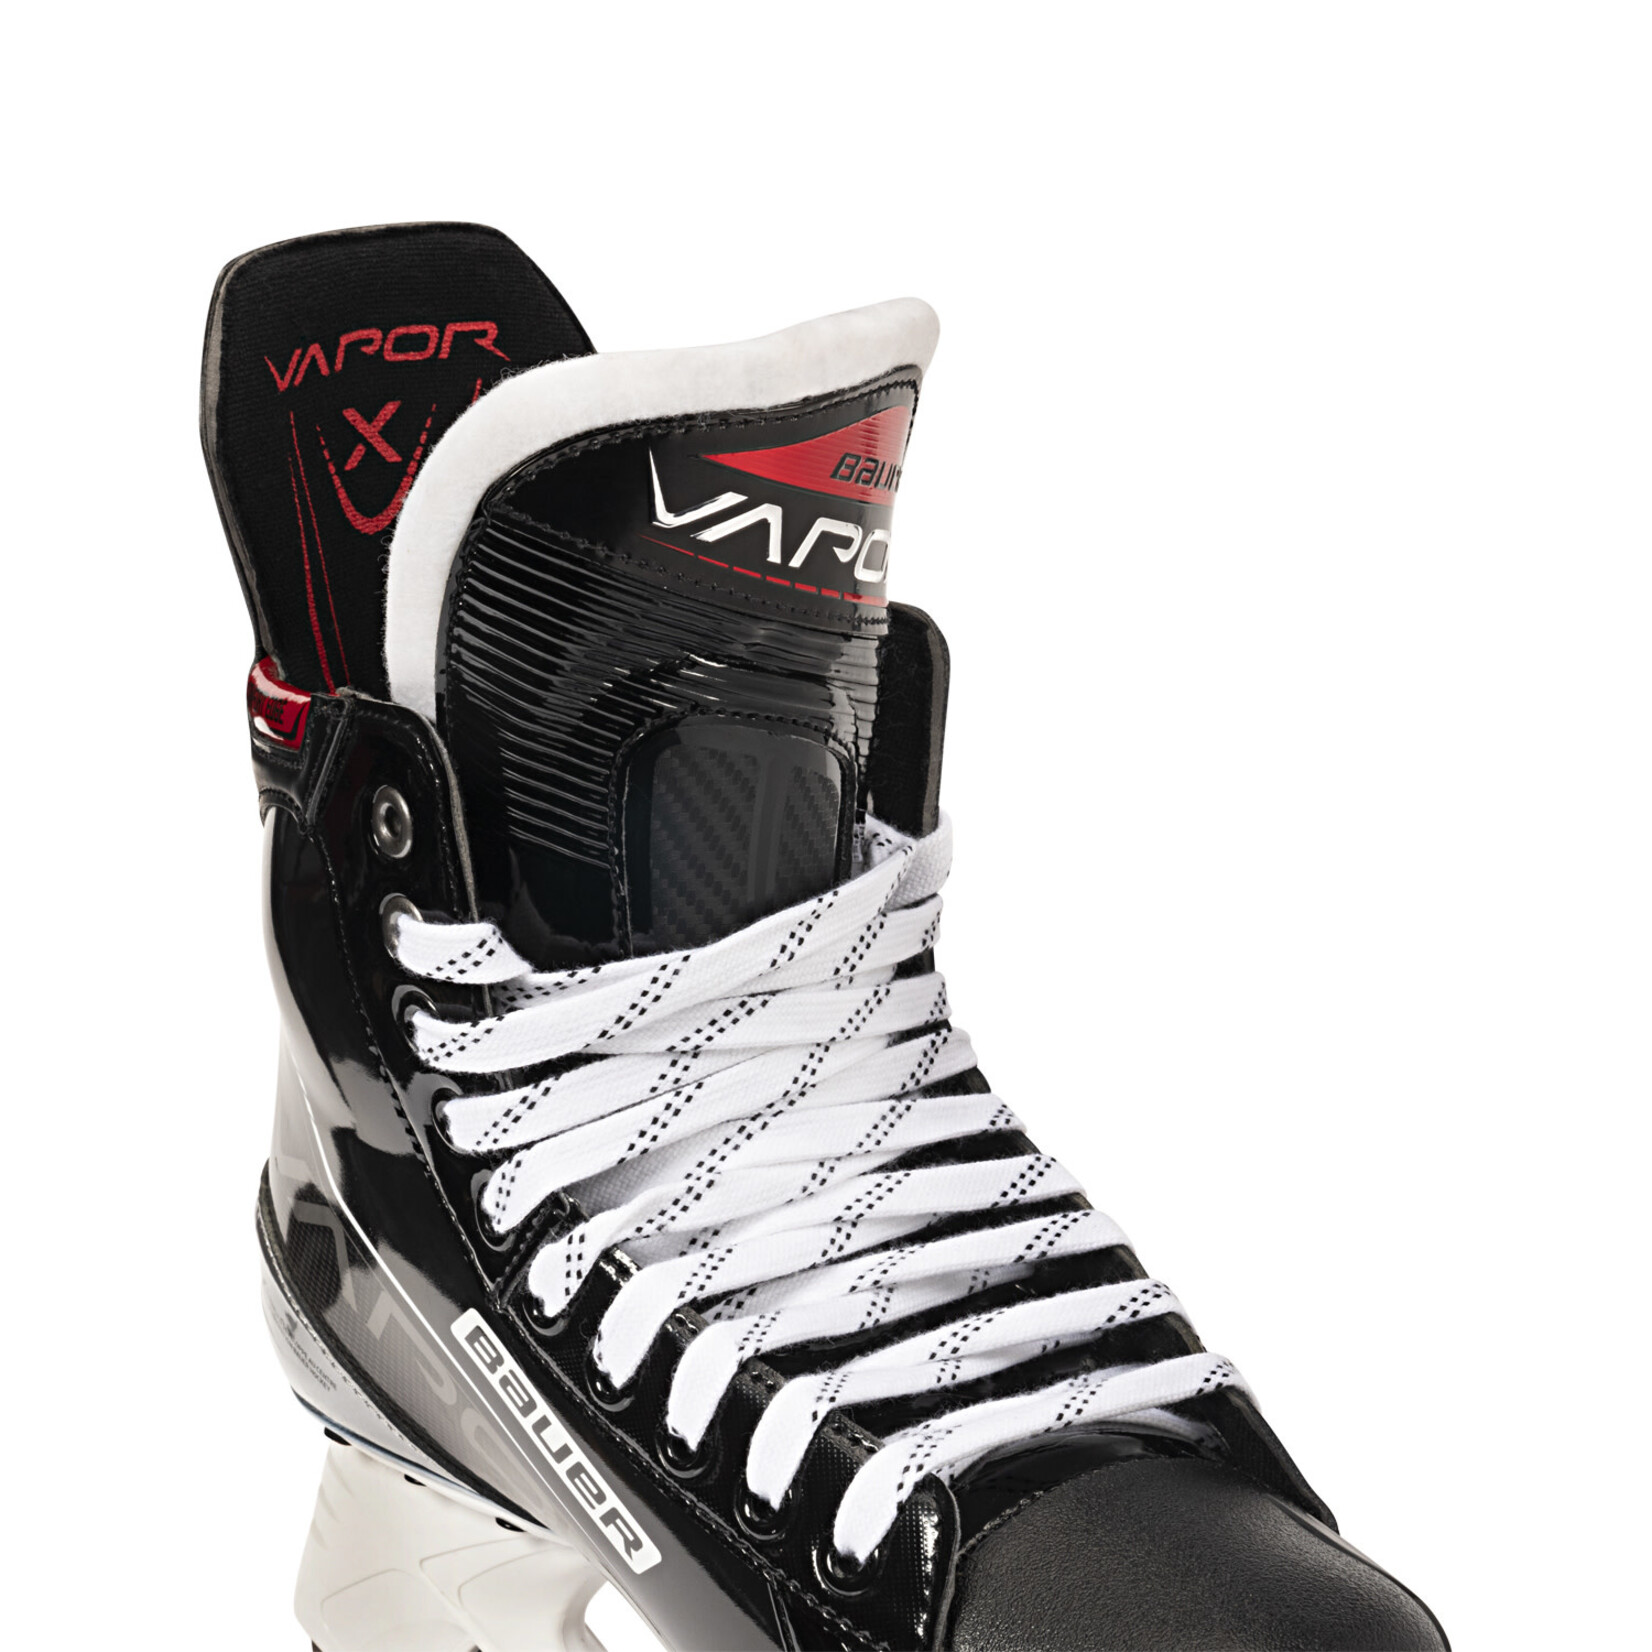 Bauer Bauer Hockey Skates, Vapor XLTX Pro, Intermediate